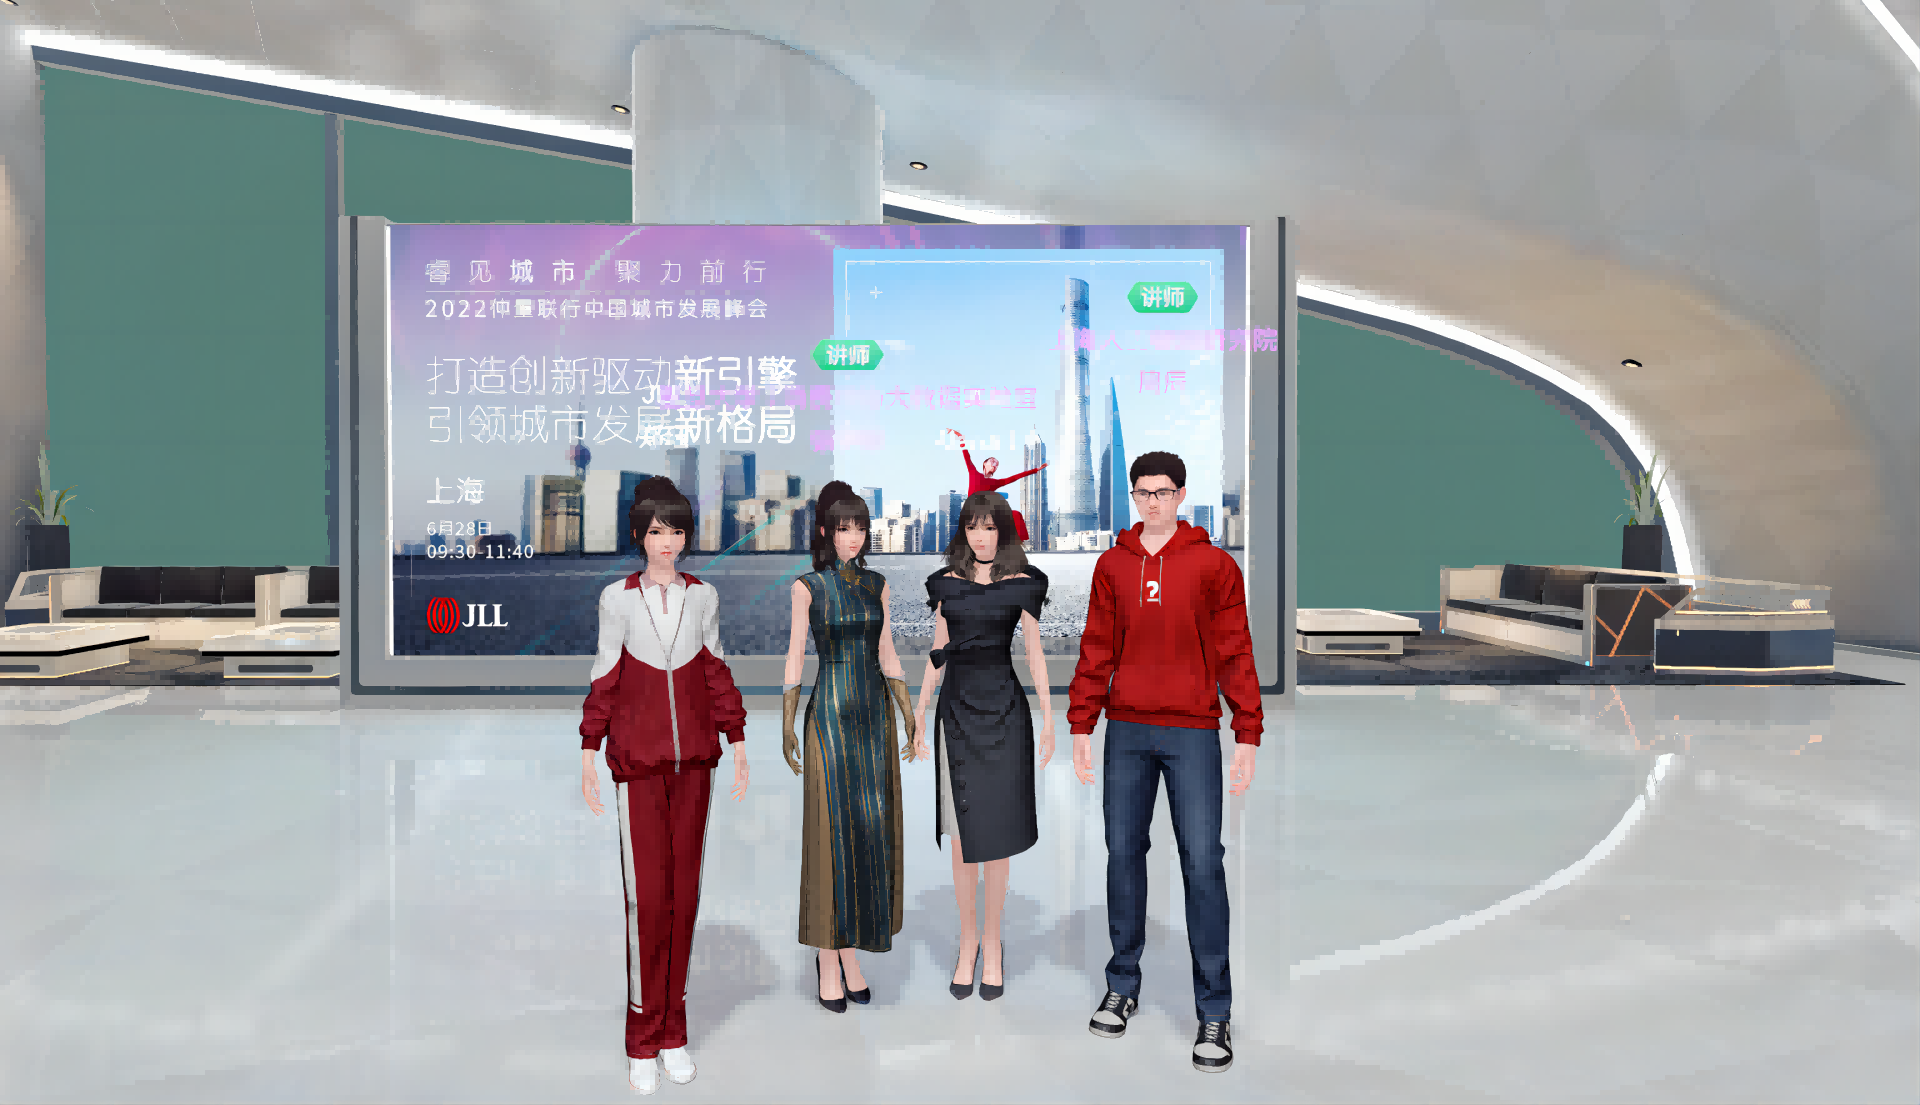 四名卡通风格的虚拟人物站在现代化室内环境中，背景是一块展示信息的大屏幕。